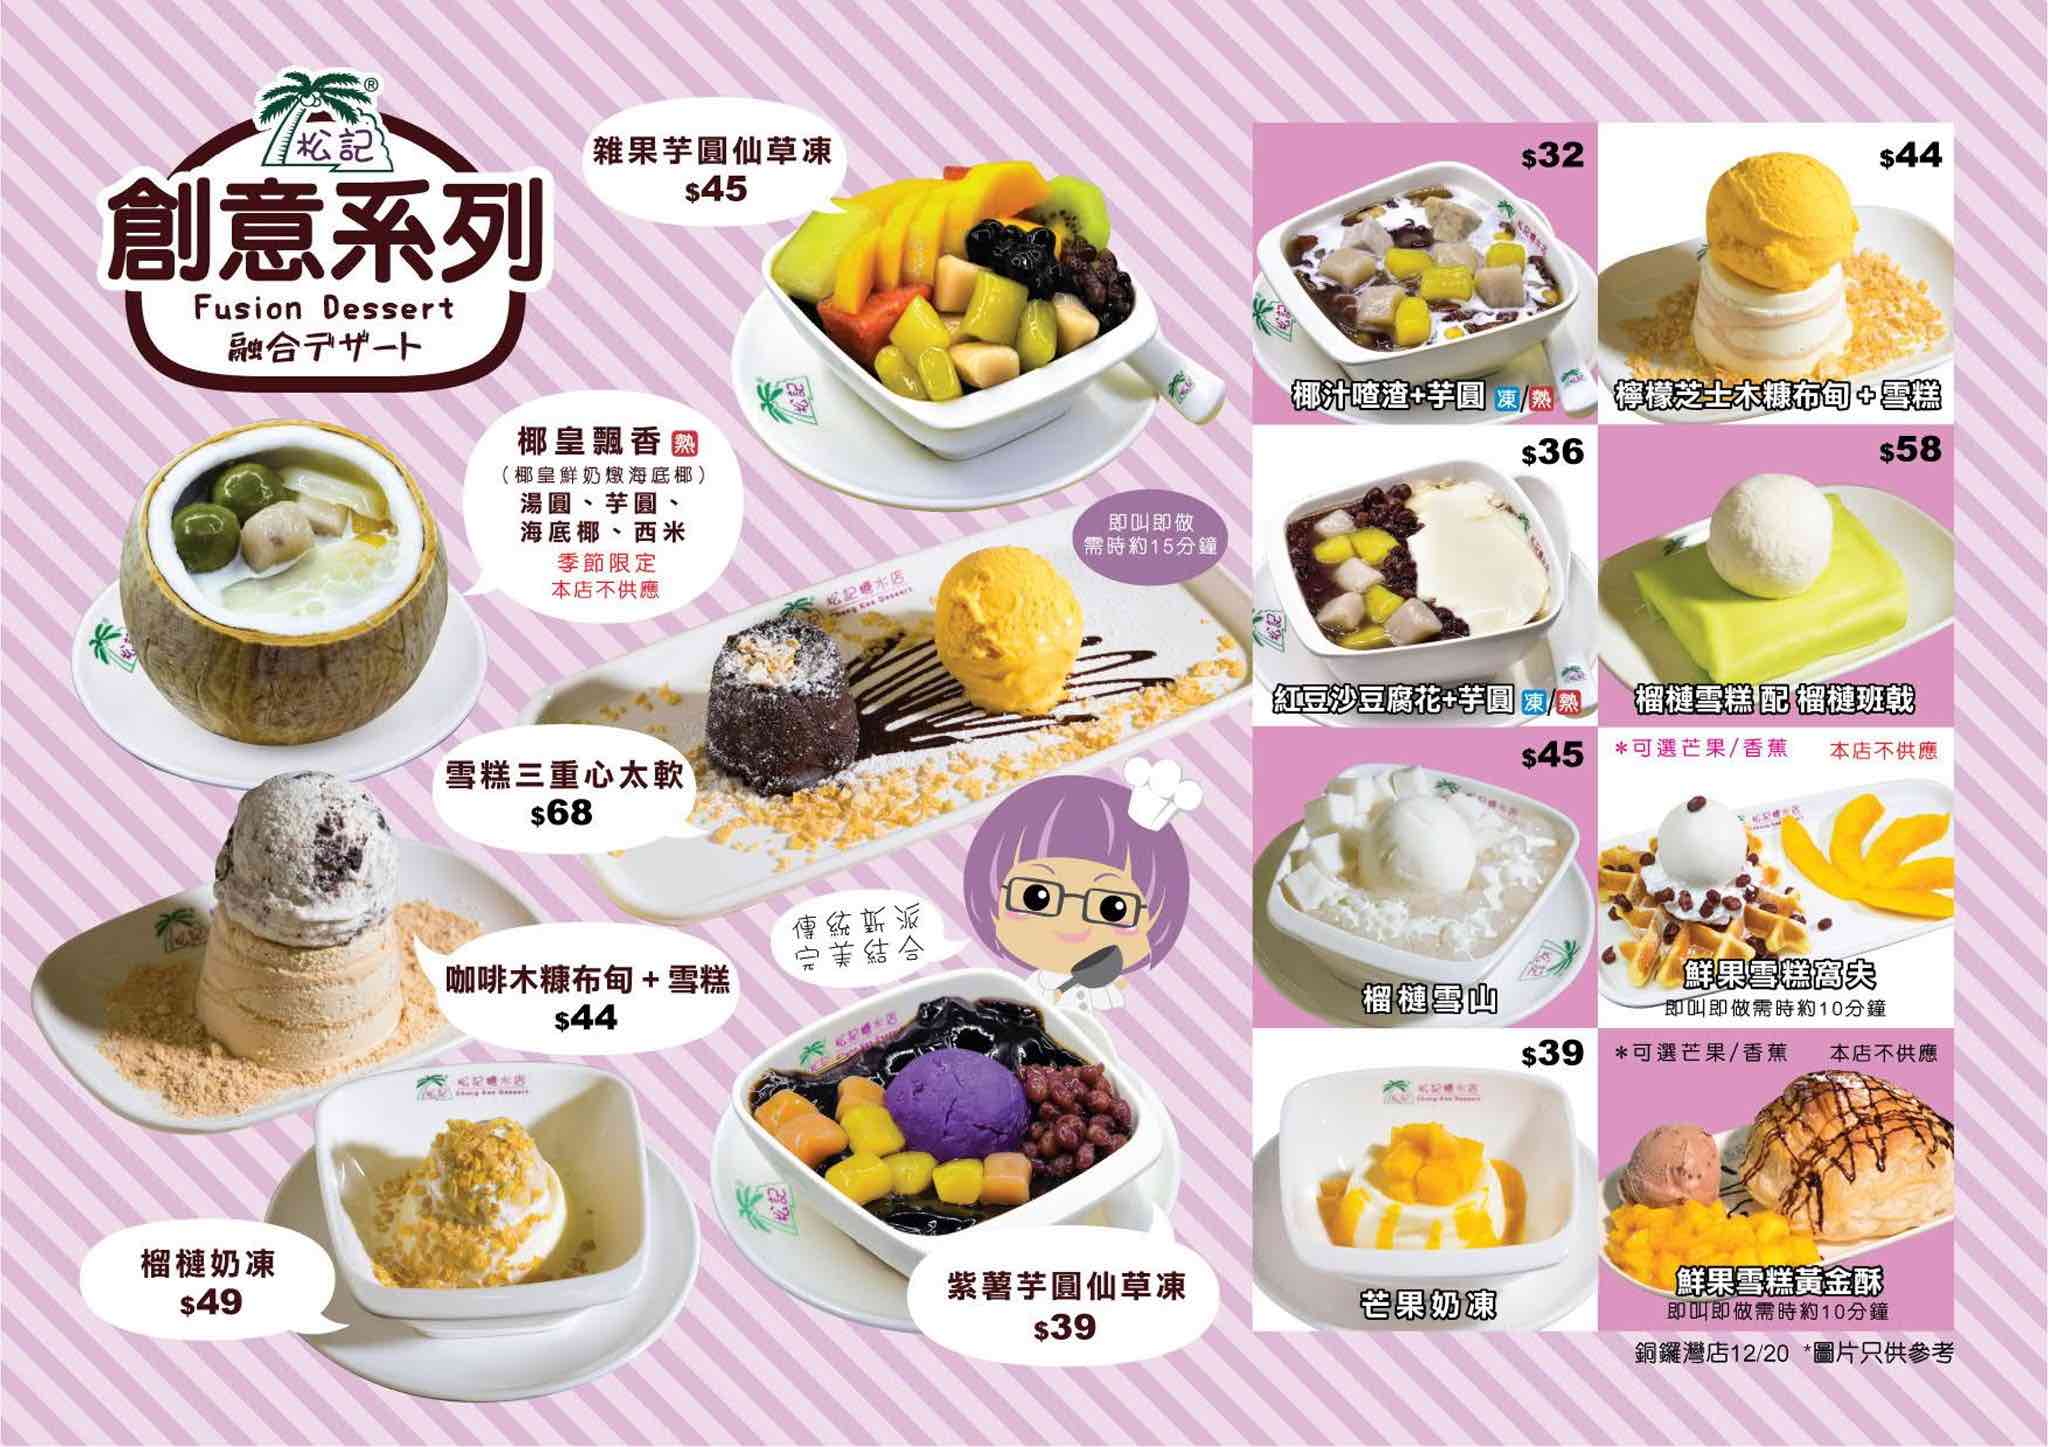 松記糖水店 ChungKee Dessert的特許經營香港區加盟店項目8